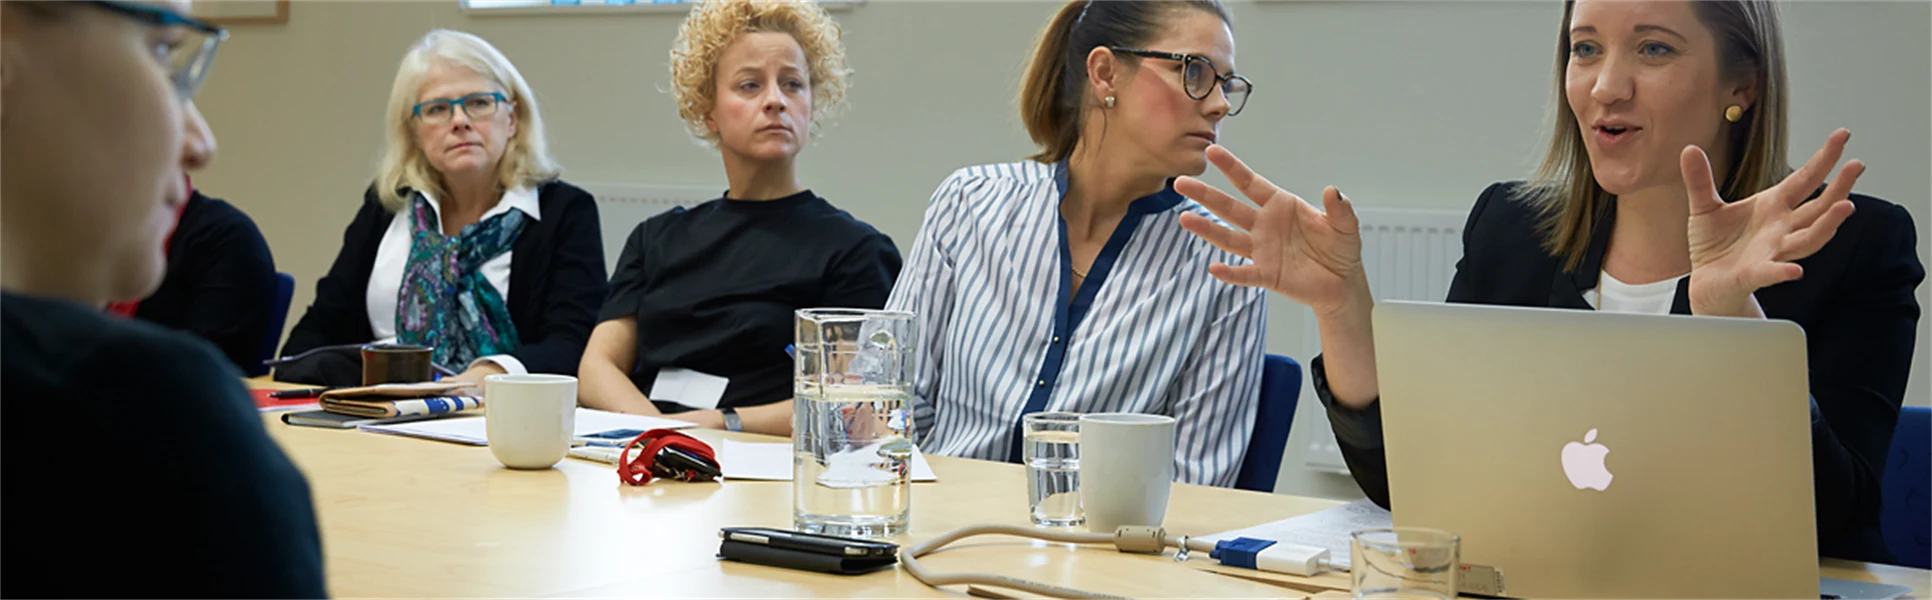 Fem kvinnor sitter vid ett konferensbord och diskuterar.